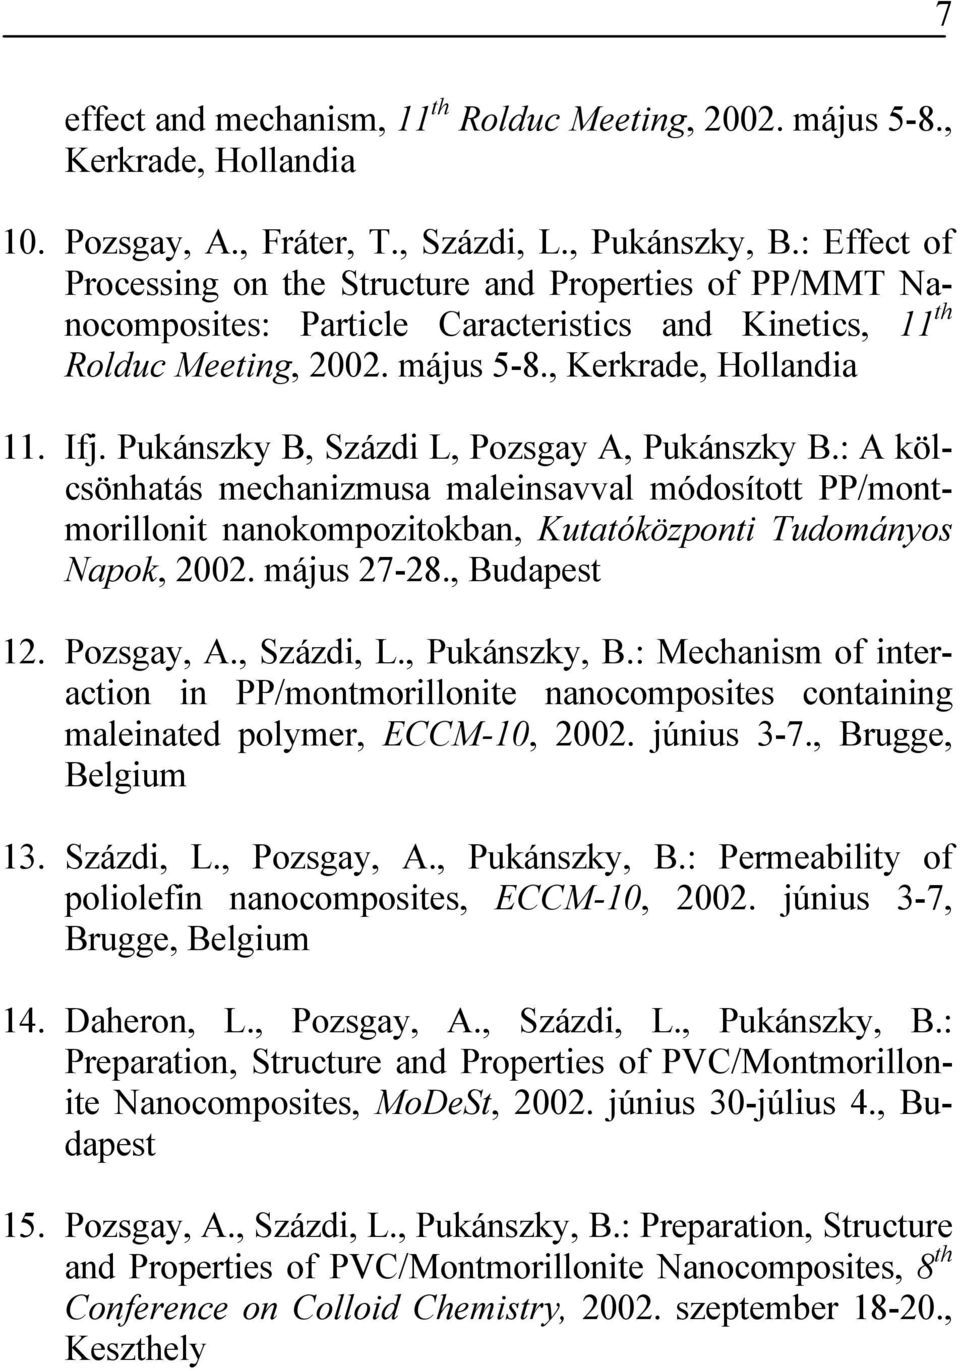 Pukánszky B, Százdi L, Pozsgay A, Pukánszky B.: A kölcsönhatás mechanizmusa maleinsavval módosított PP/montmorillonit nanokompozitokban, Kutatóközponti Tudományos Napok, 2002. május 27-28.